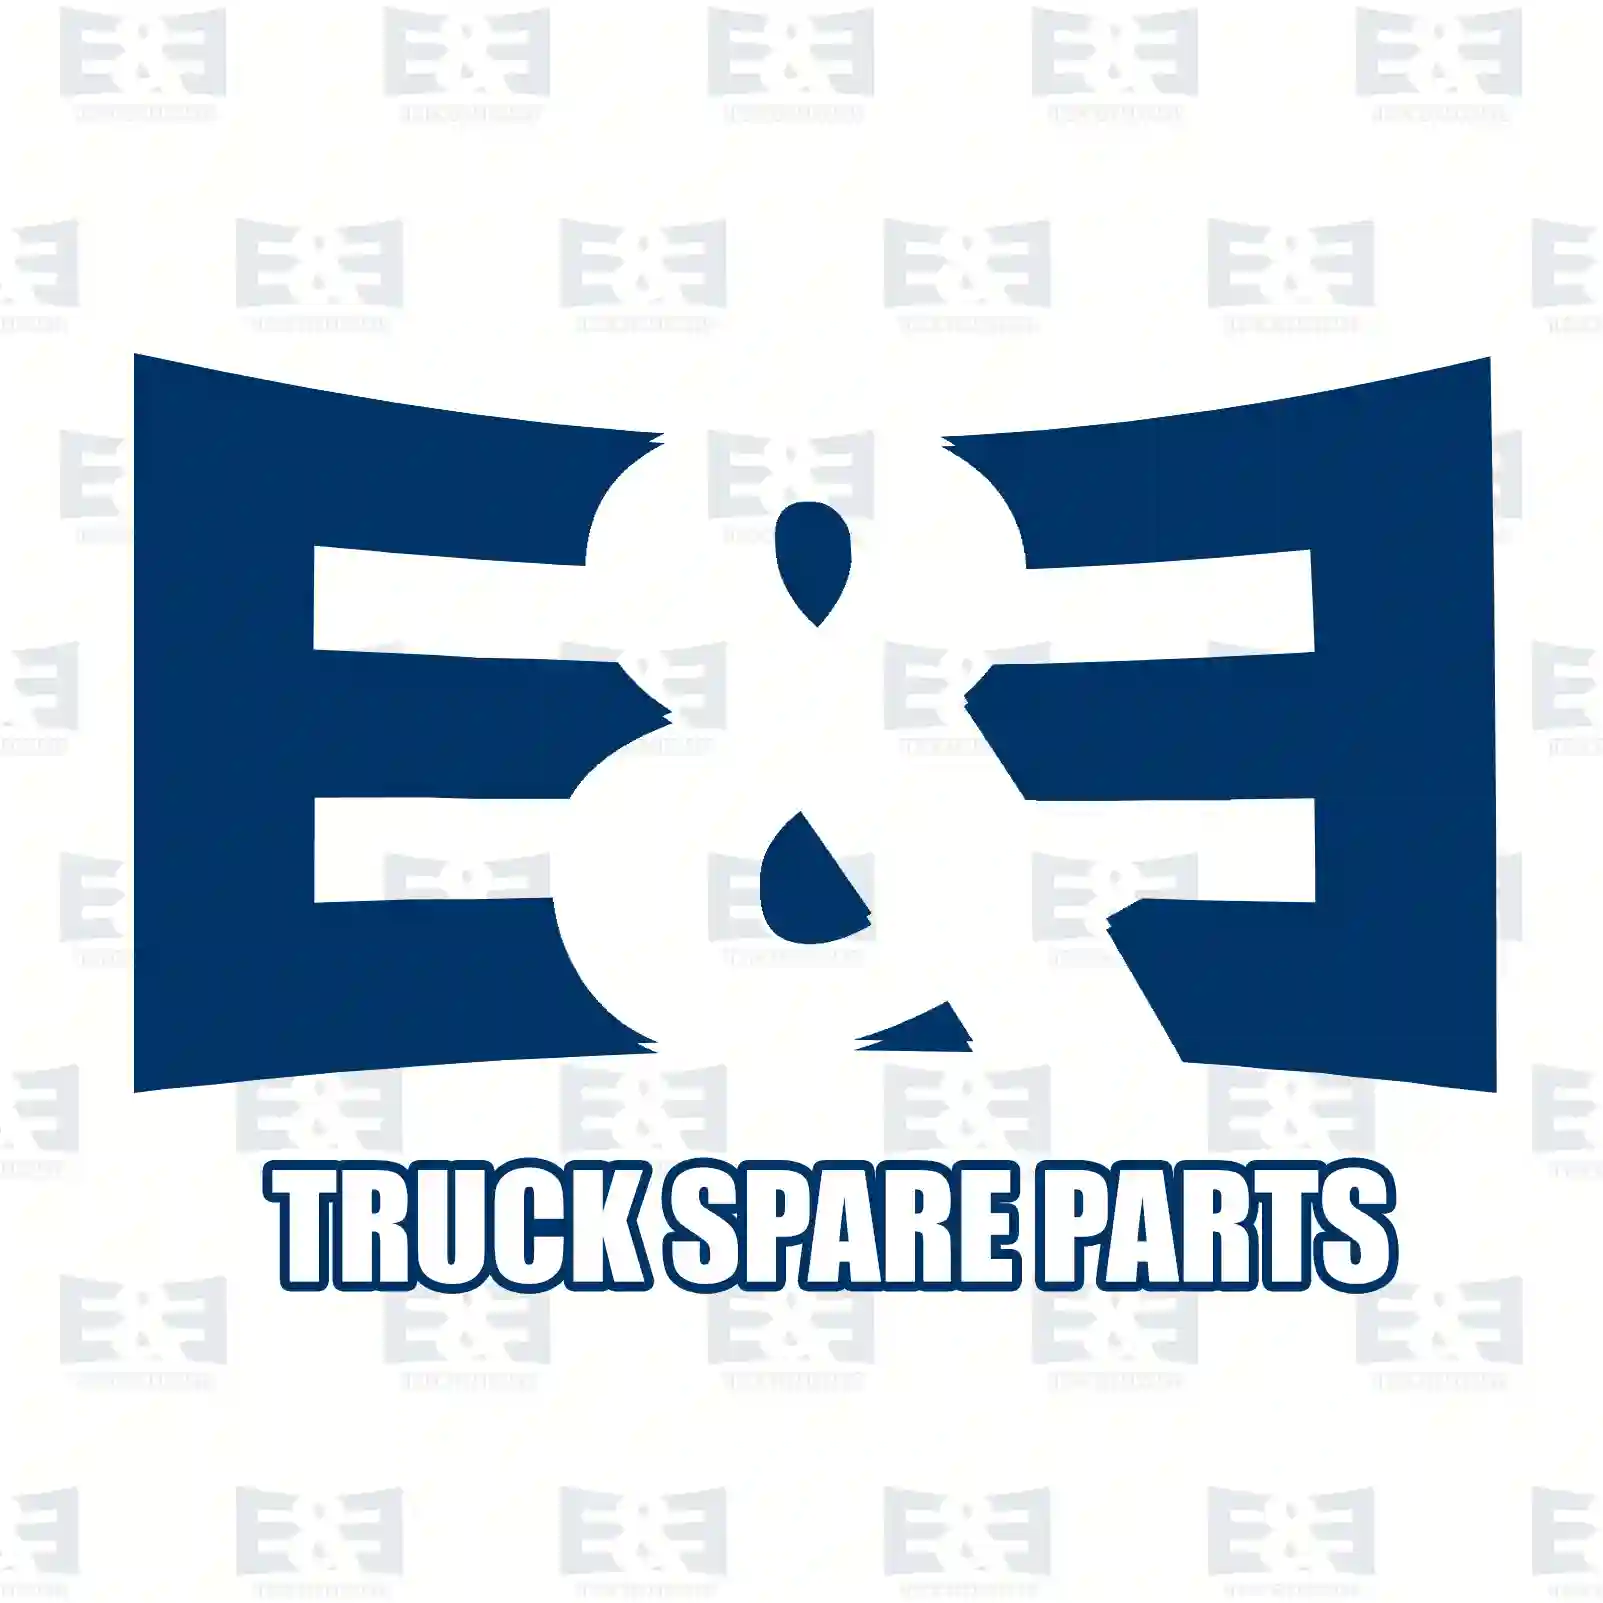 Cylinder head, compressor, 2E2296710, 81541146048, 2V5145291 ||  2E2296710 E&E Truck Spare Parts | Truck Spare Parts, Auotomotive Spare Parts Cylinder head, compressor, 2E2296710, 81541146048, 2V5145291 ||  2E2296710 E&E Truck Spare Parts | Truck Spare Parts, Auotomotive Spare Parts